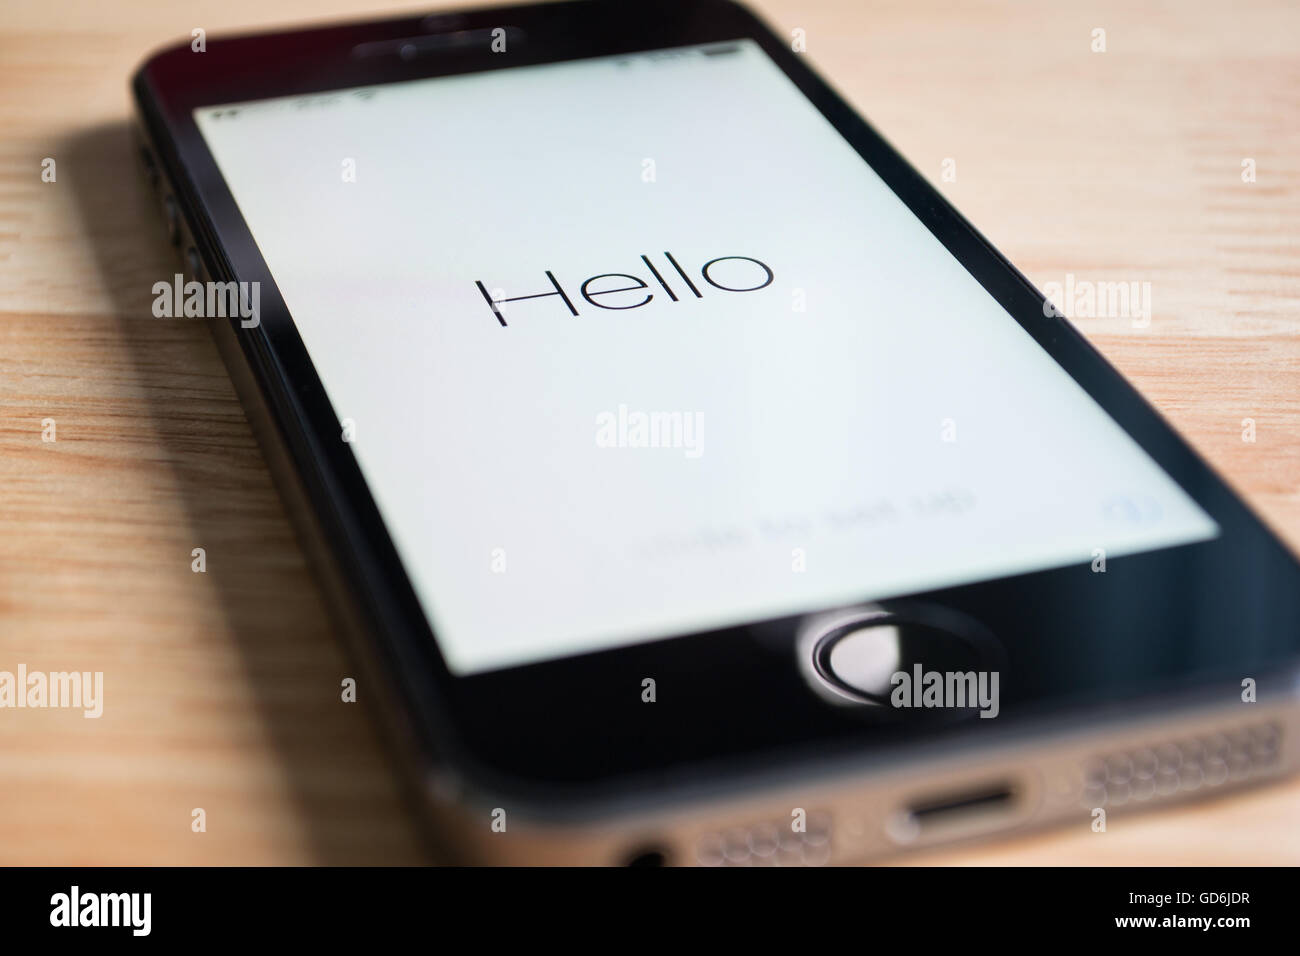 Bangkok, Thailand - 23. März 2016: Apple iPhone5s zeigt den Bildschirm "Hallo", wenn die Software aktualisiert wurde. Stockfoto